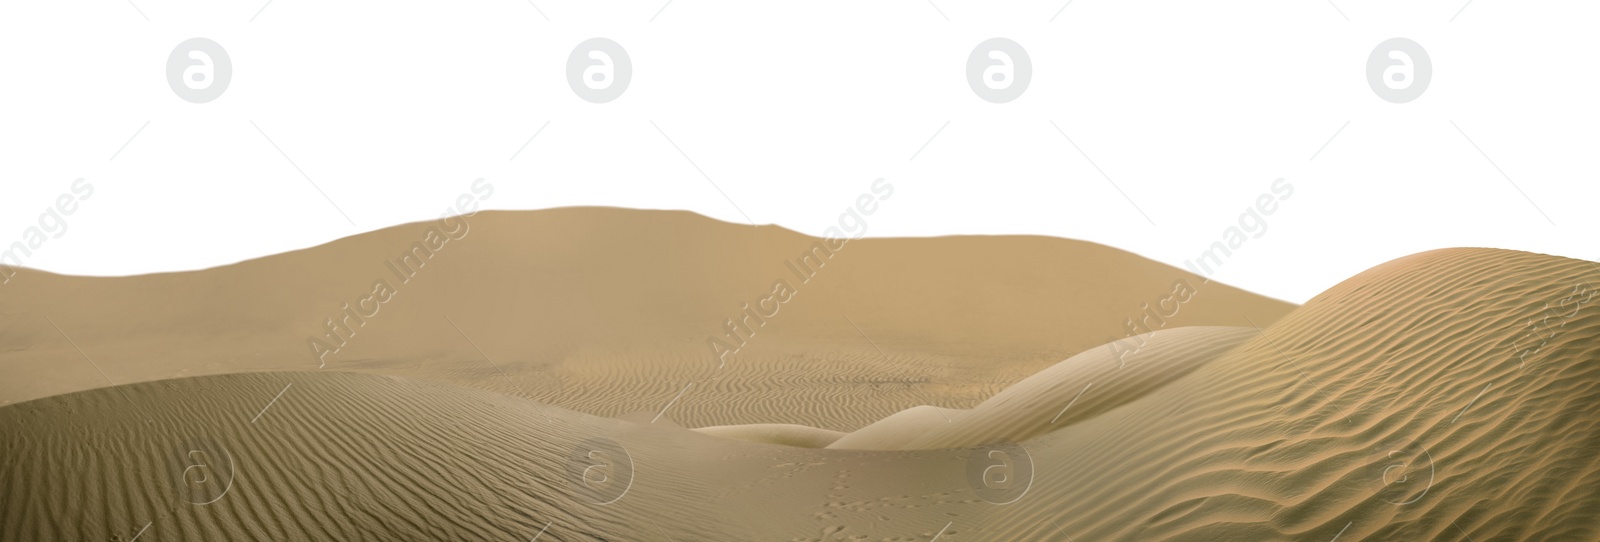 Image of Sand dunes on white background, banner design. Wild desert 